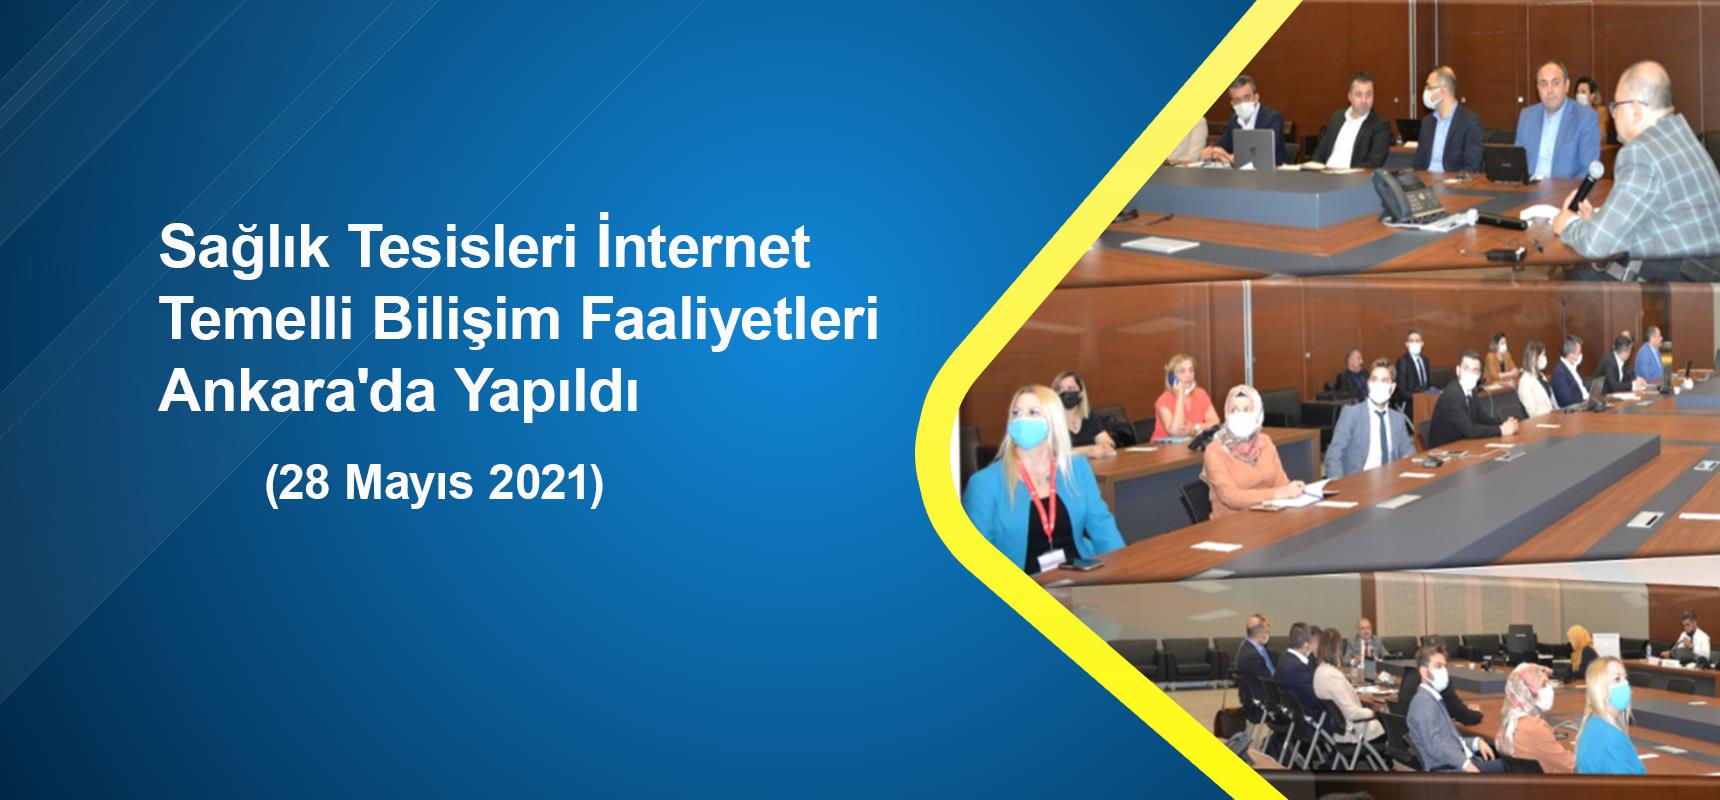 Sağlık Tesisleri İnternet Temelli Bilişim Faaliyetleri Ankara'da Yapıldı